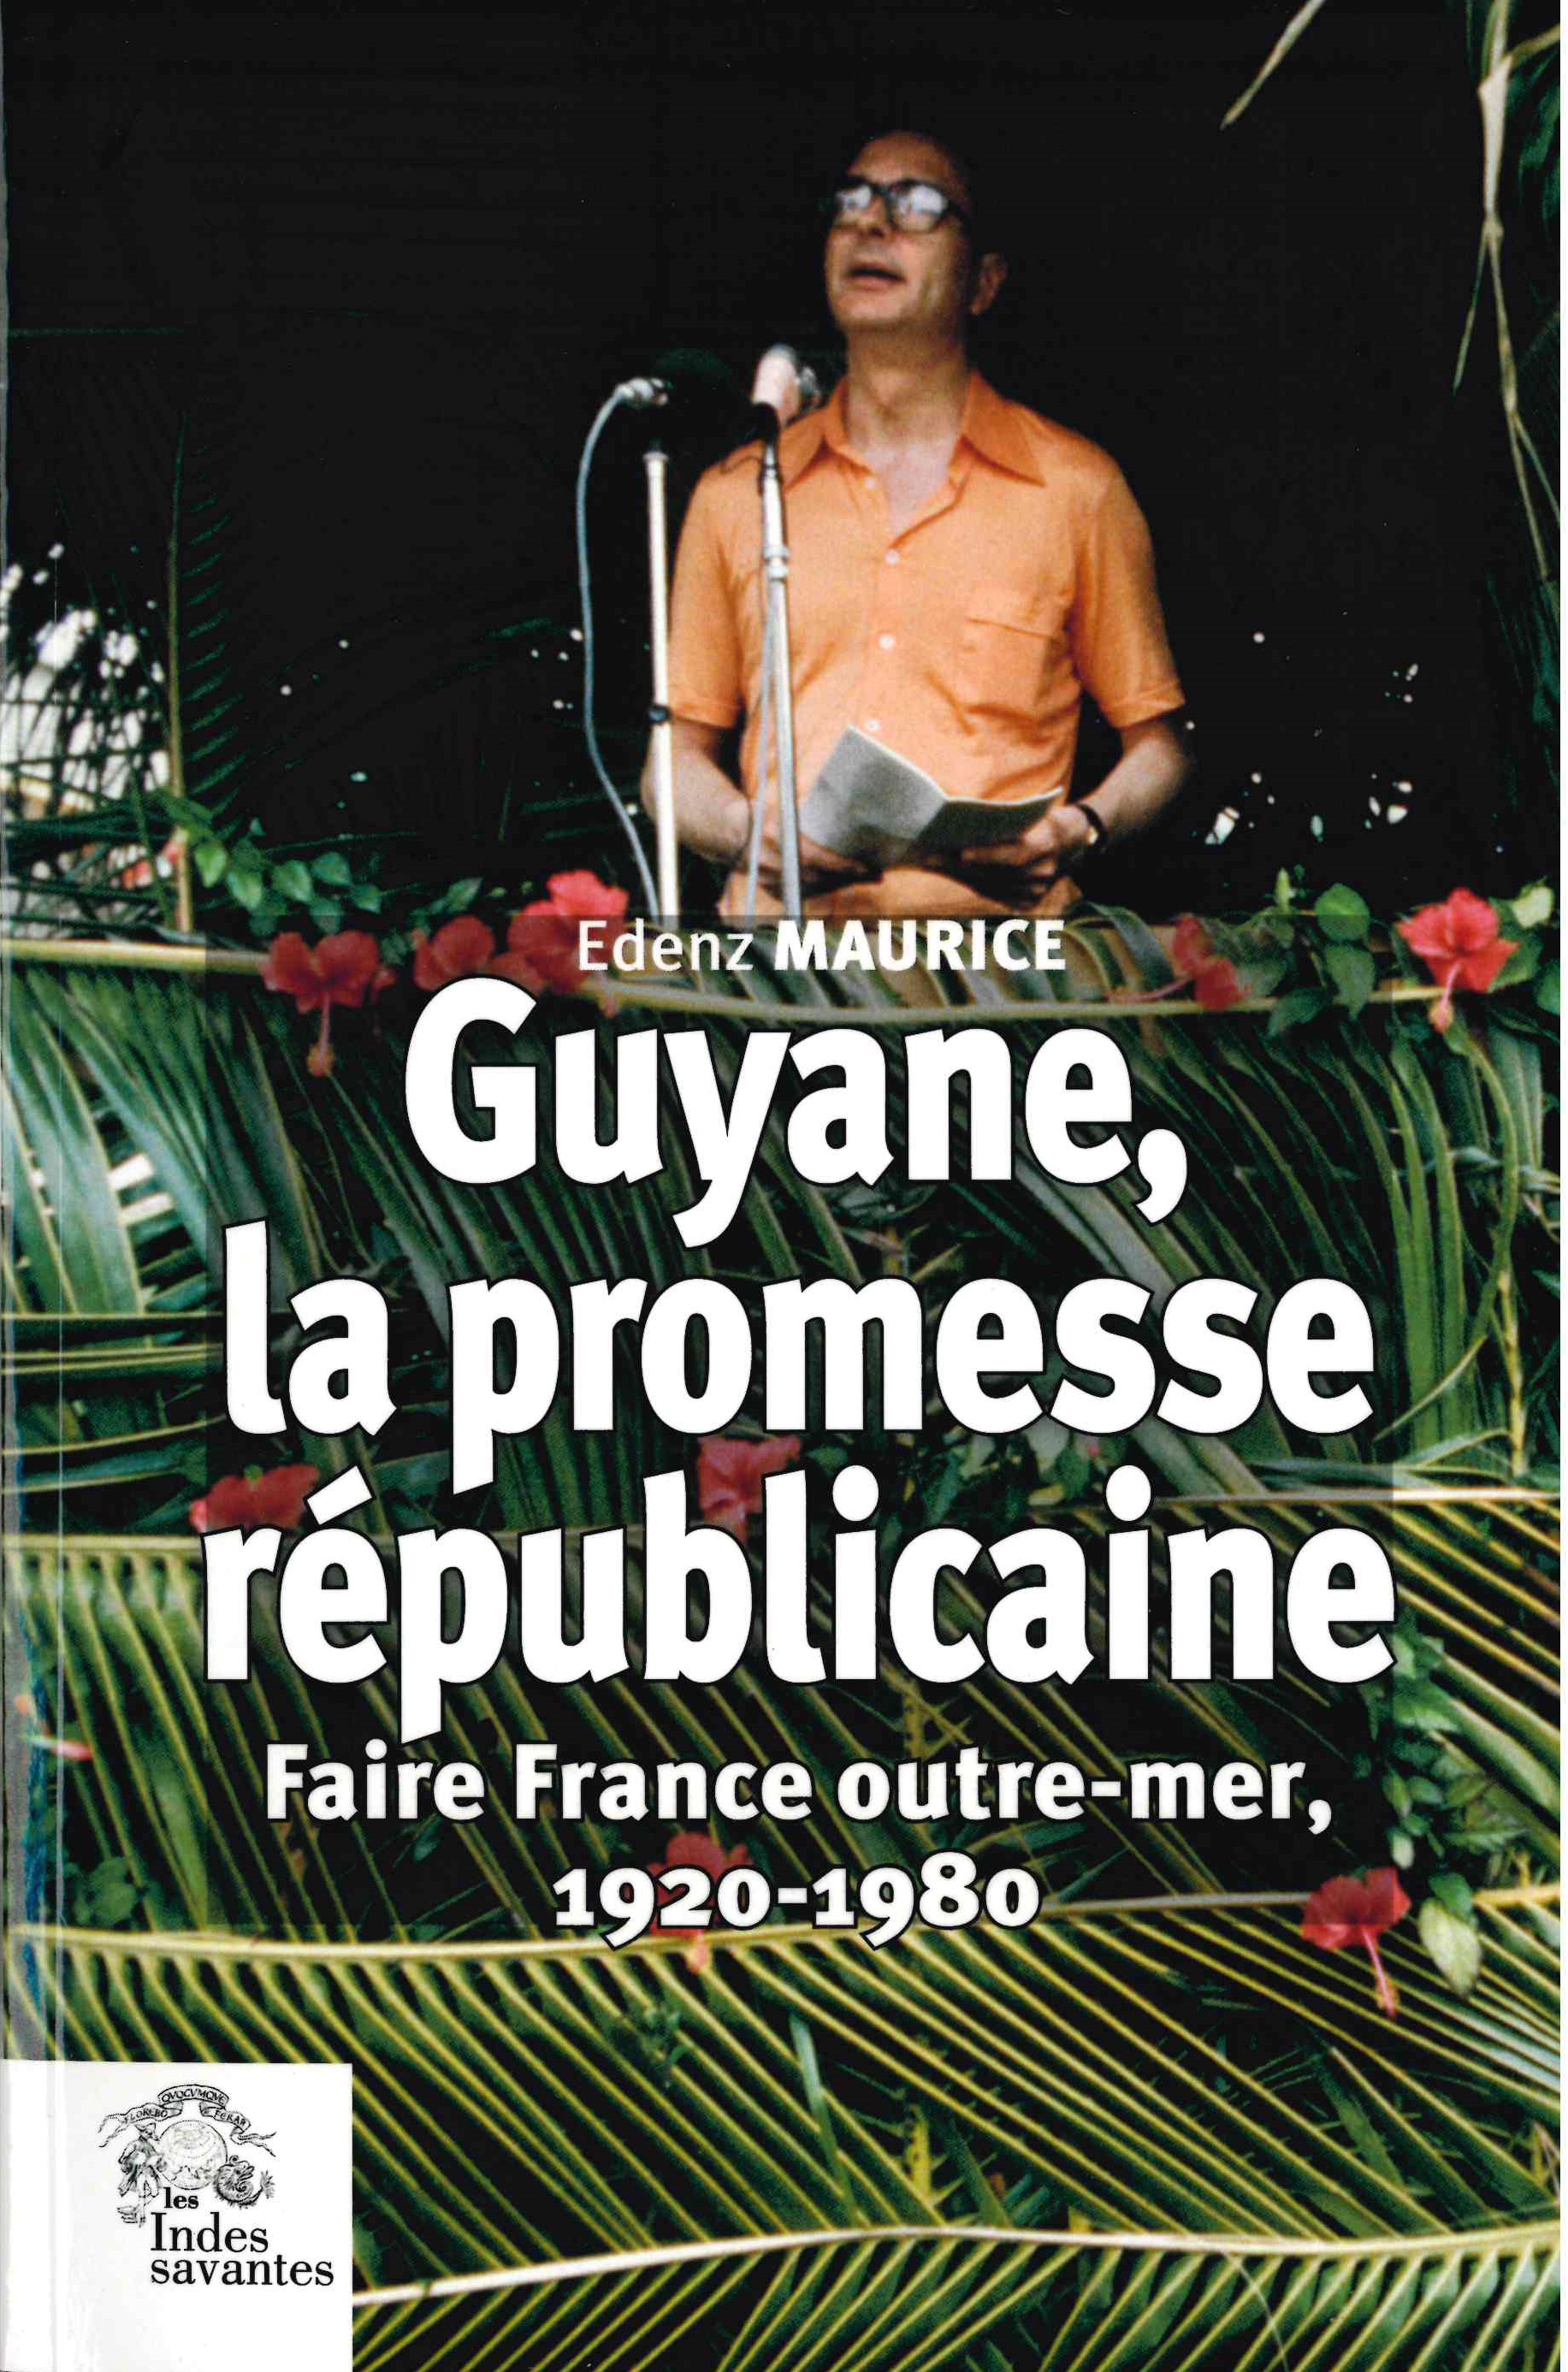 Edenz (Maurice), Guyane, la promesse républicaine : faire France outre-mer, 1920-1980